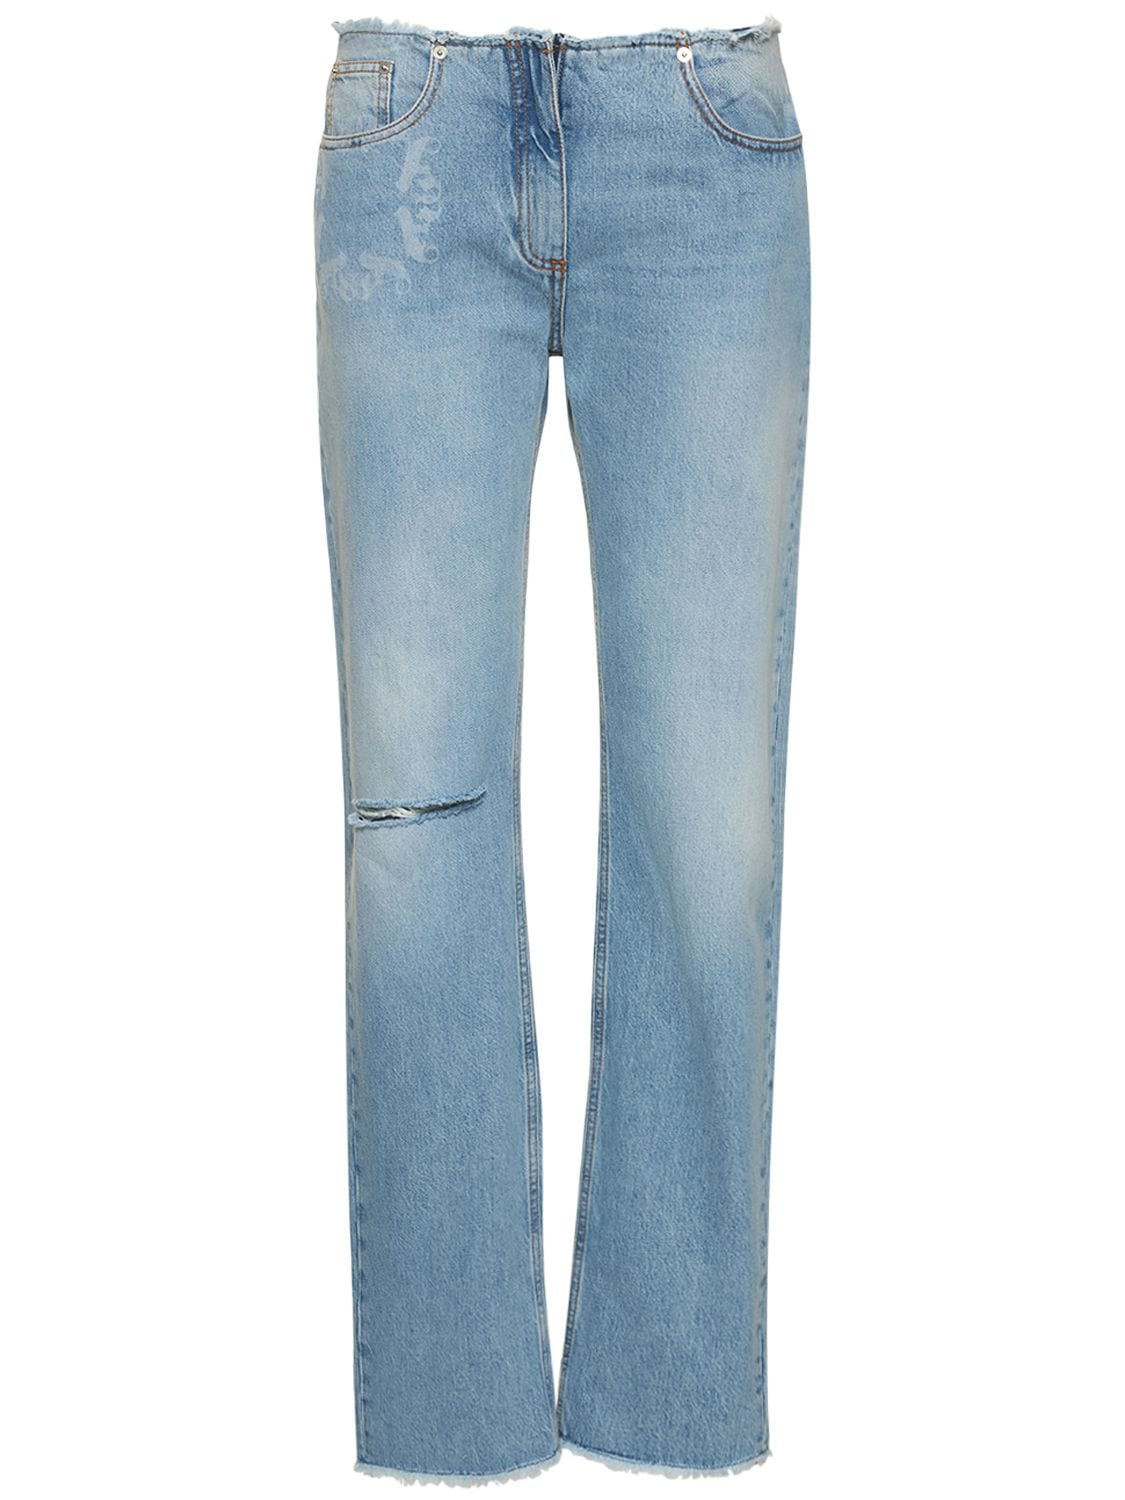 Mujer Jeans Rectos De Denim De Algodón 26 - 1017 ALYX 9SM - Modalova